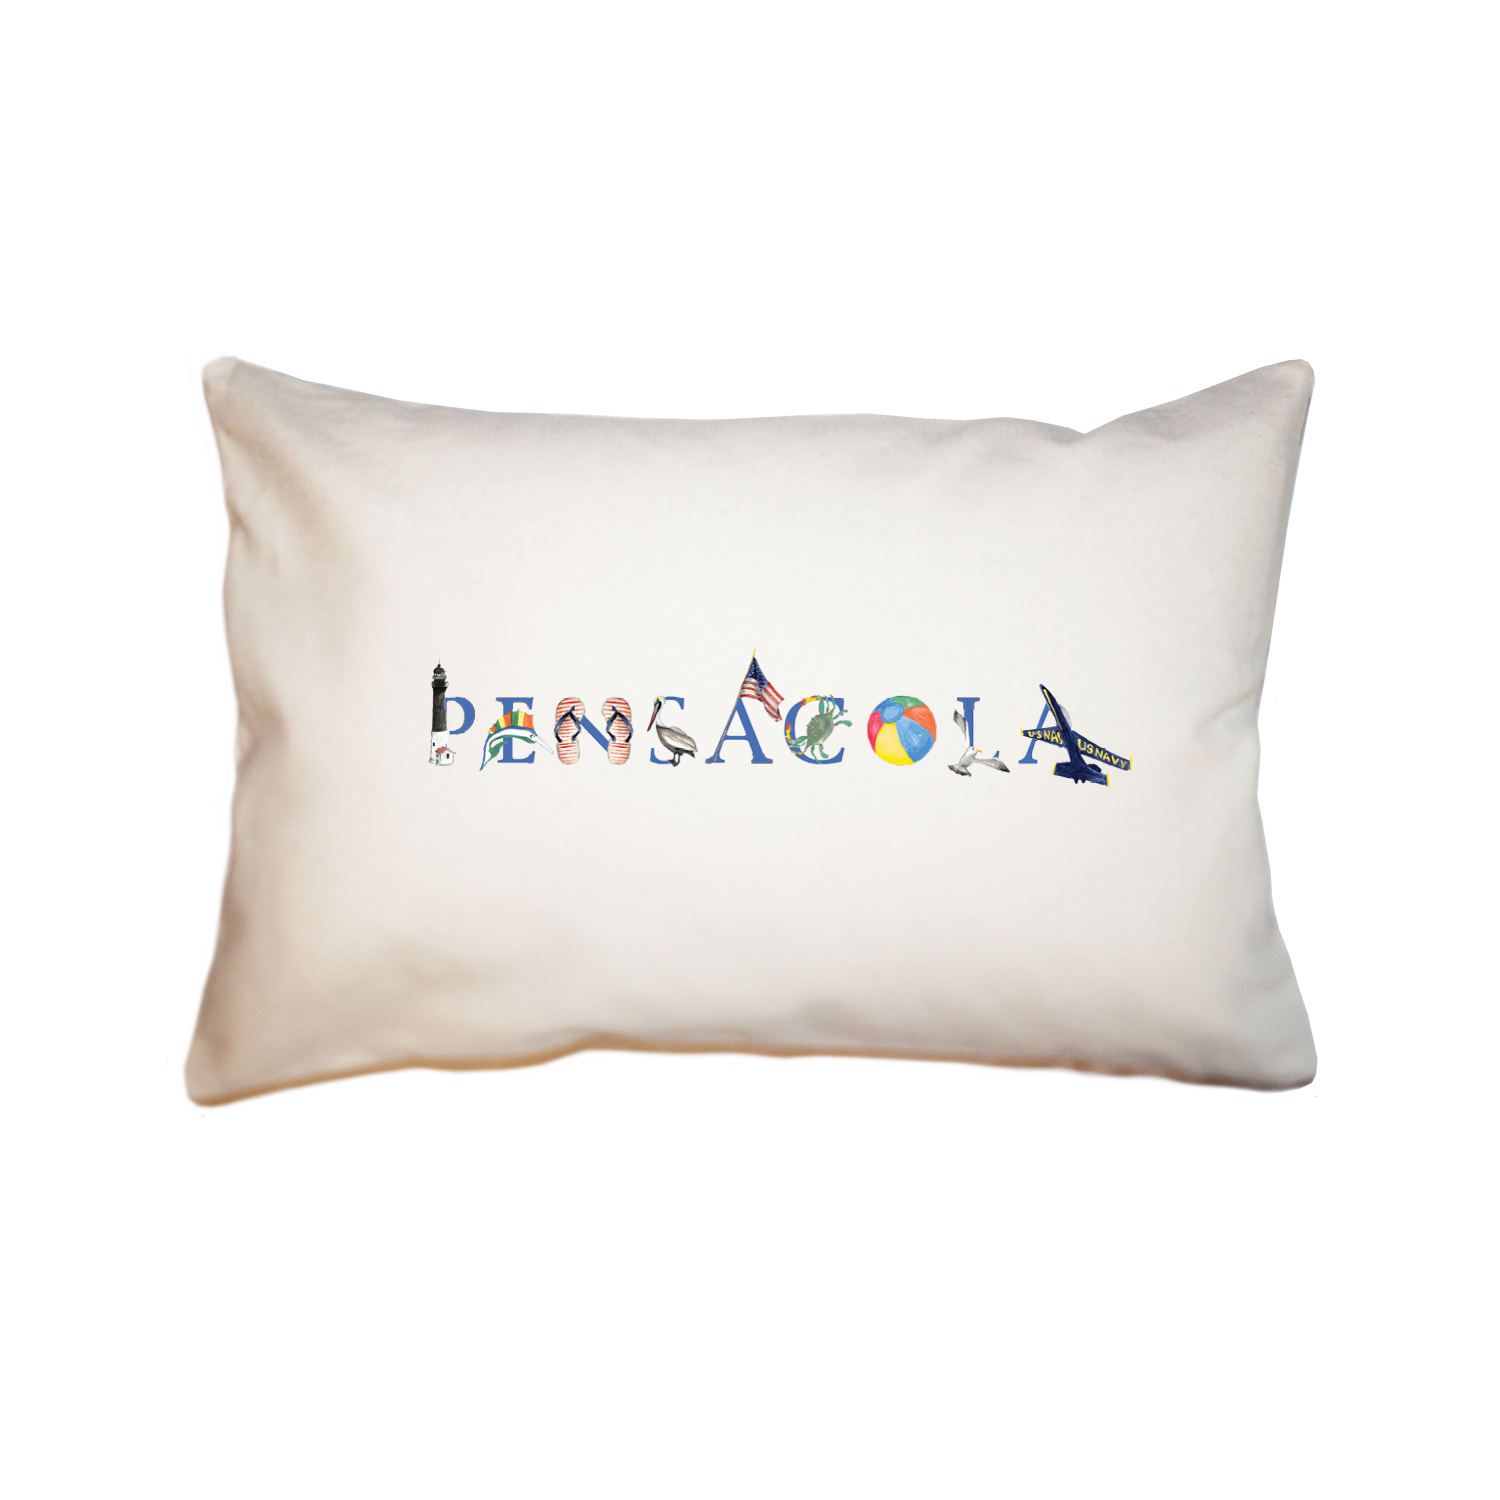 Pensacola large rectangle pillow